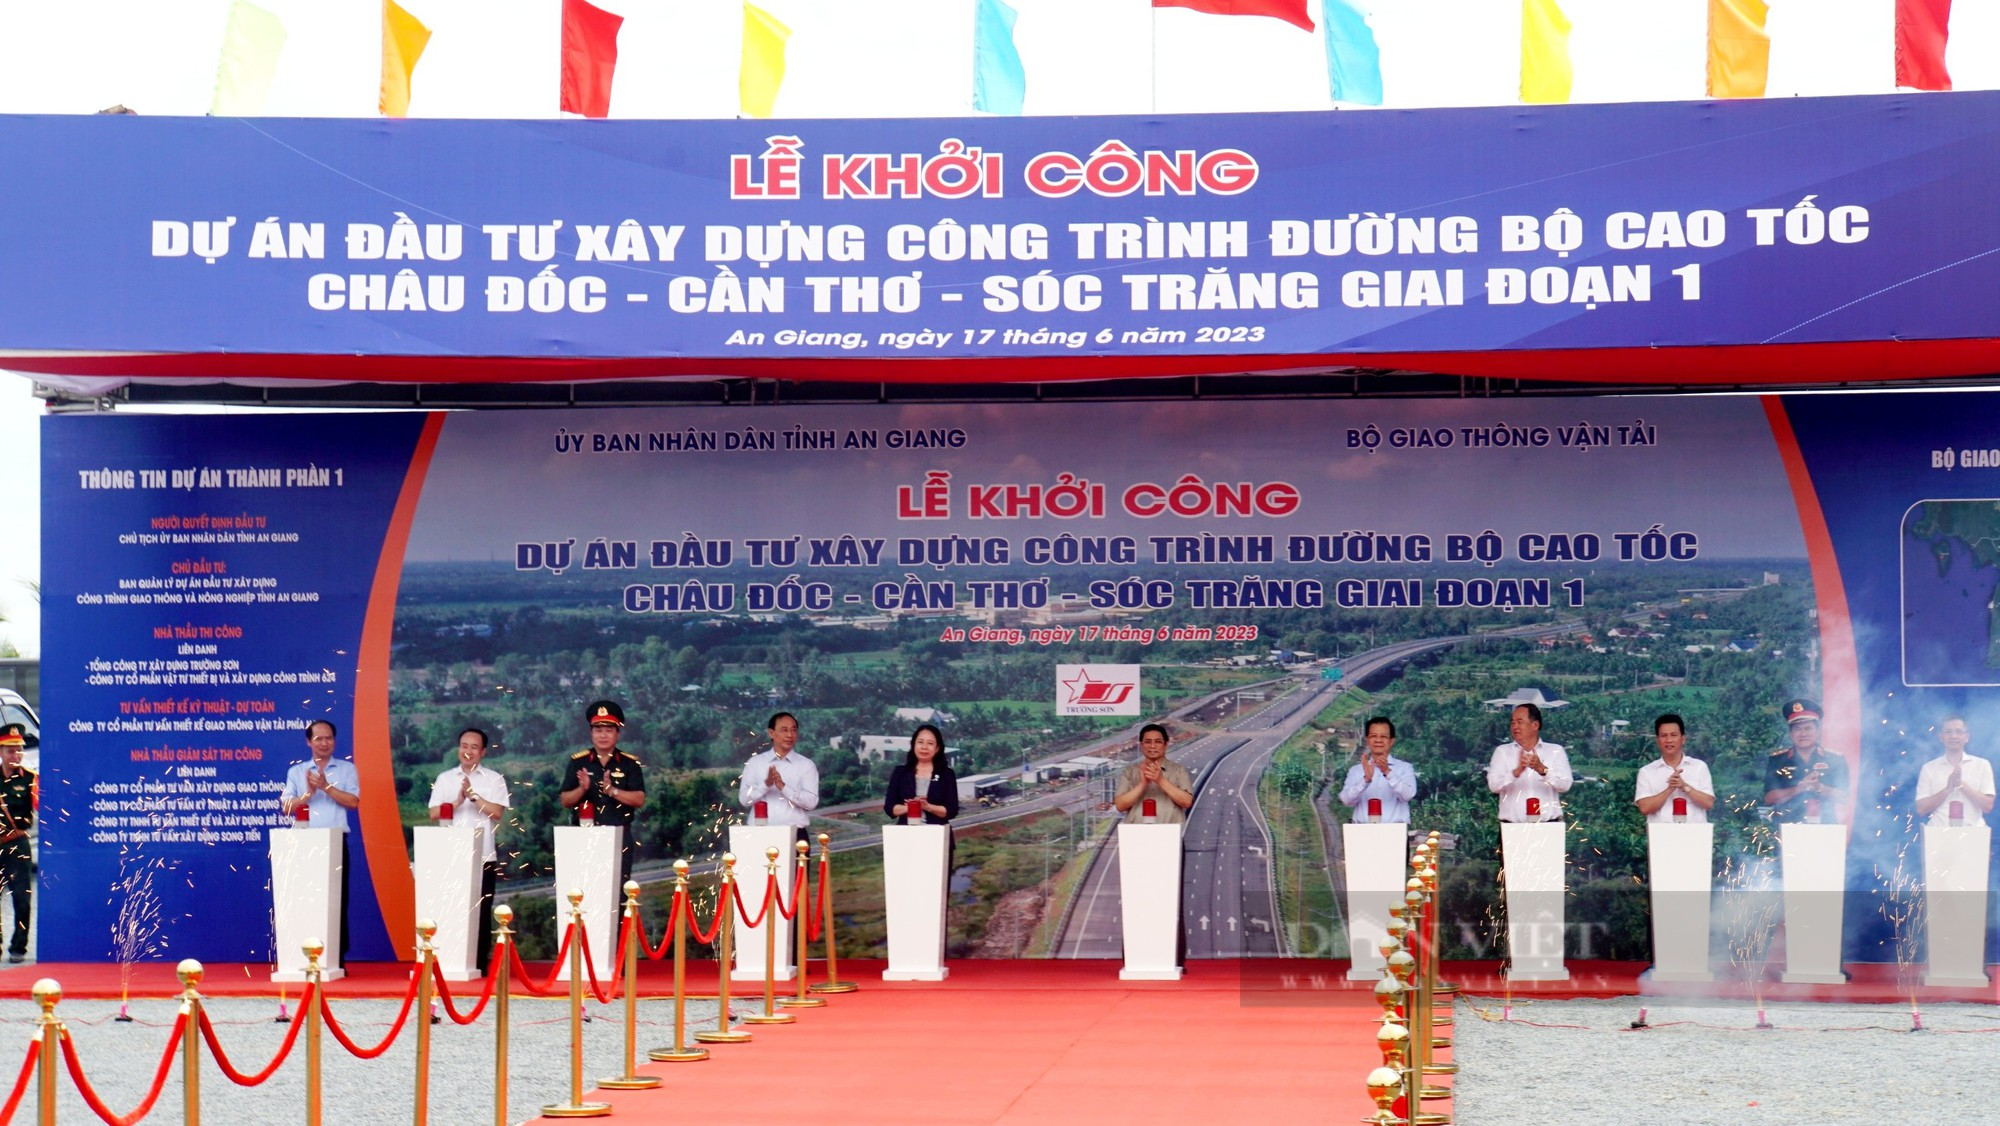 Chính phủ sẽ chỉ đạo quyết liệt để cao tốc Châu Đốc - Cần Thơ - Sóc Trăng hoàn thành đúng tiến độ, chất lượng - Ảnh 2.